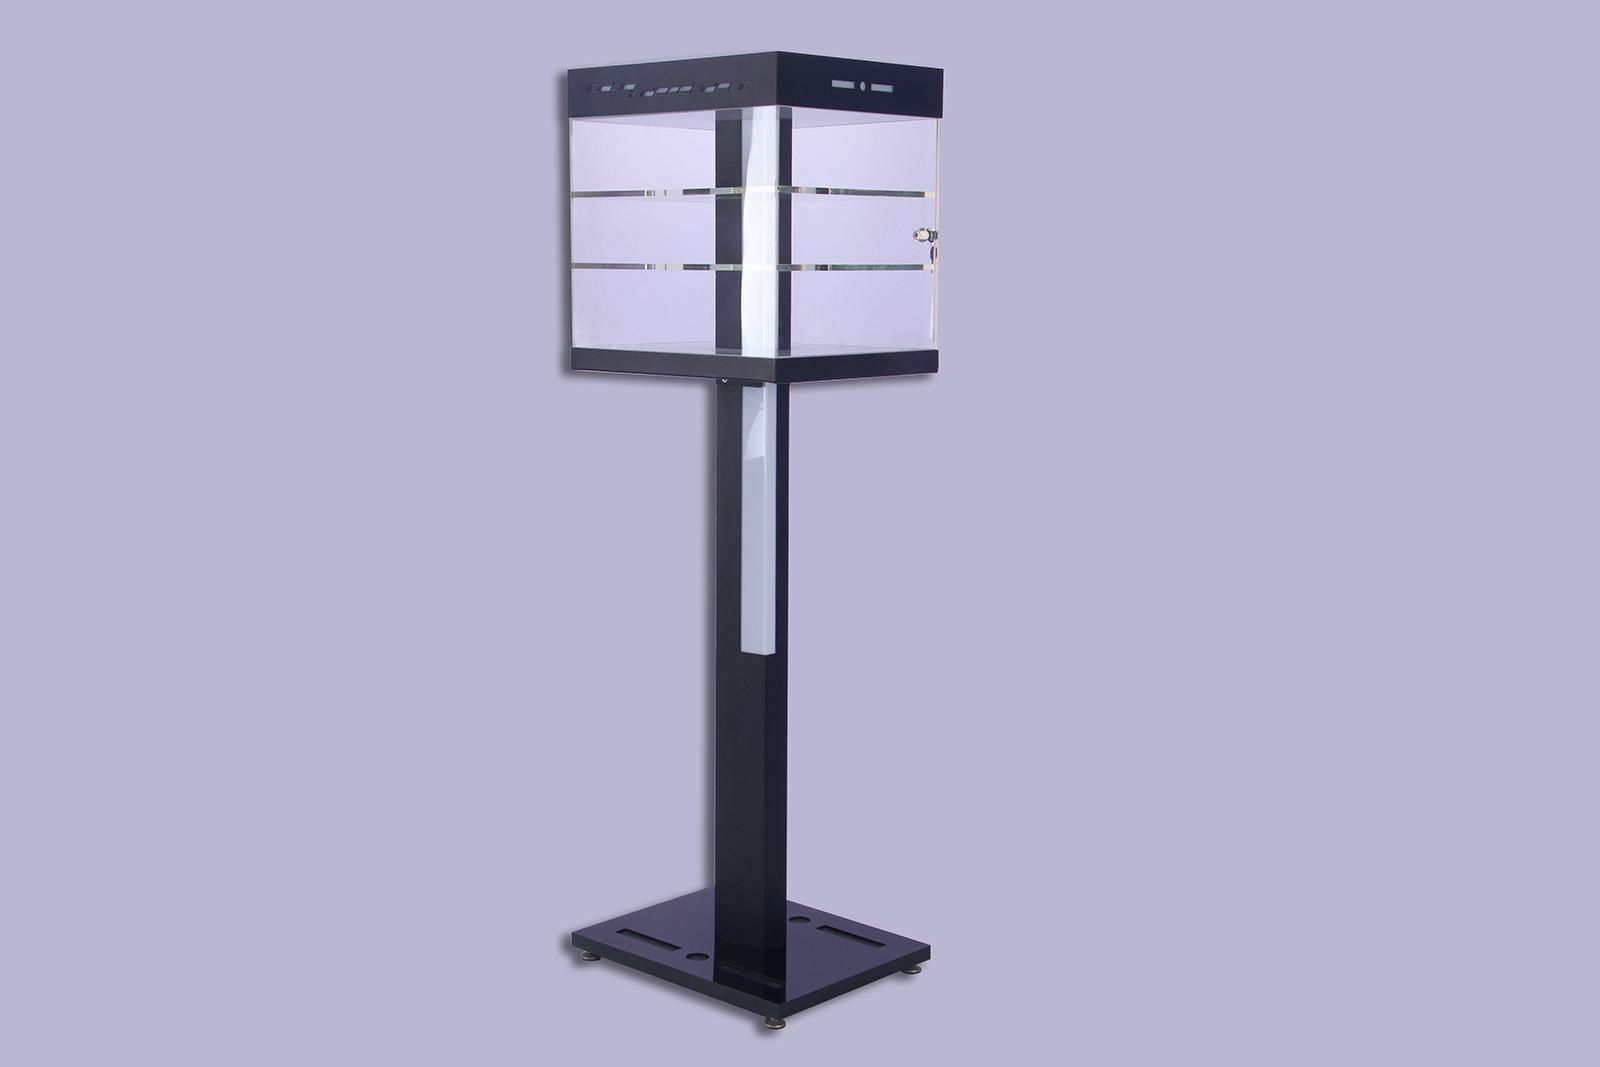 Acrylic sign holder Acrylic Merchandising Display Acrylic Display Stand 2